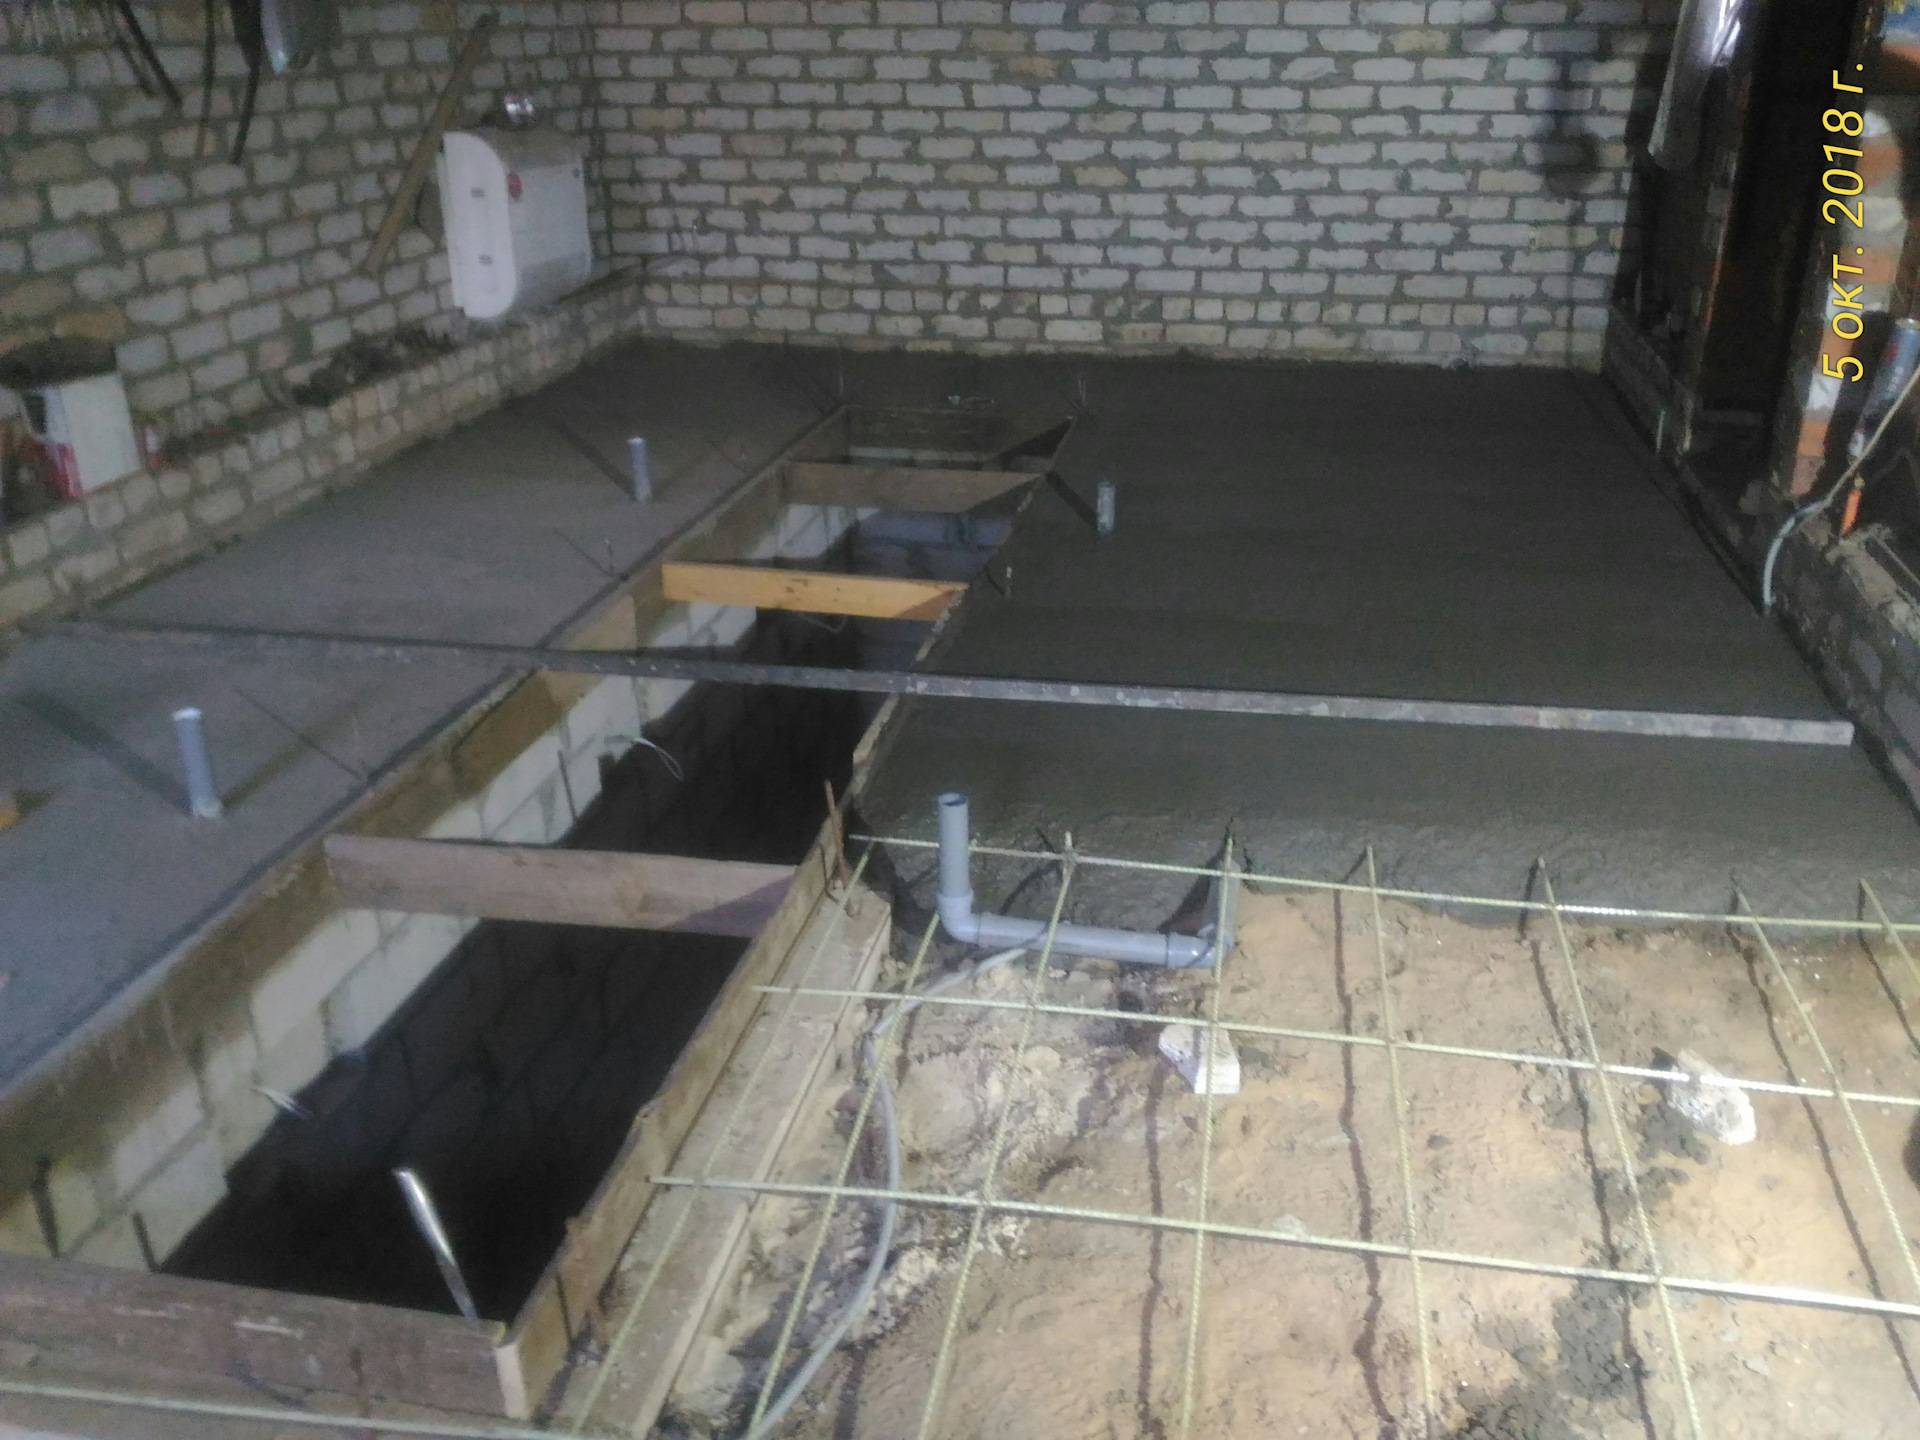 Как залить пол в гараже бетоном: подготовка, стяжка и бетонирование